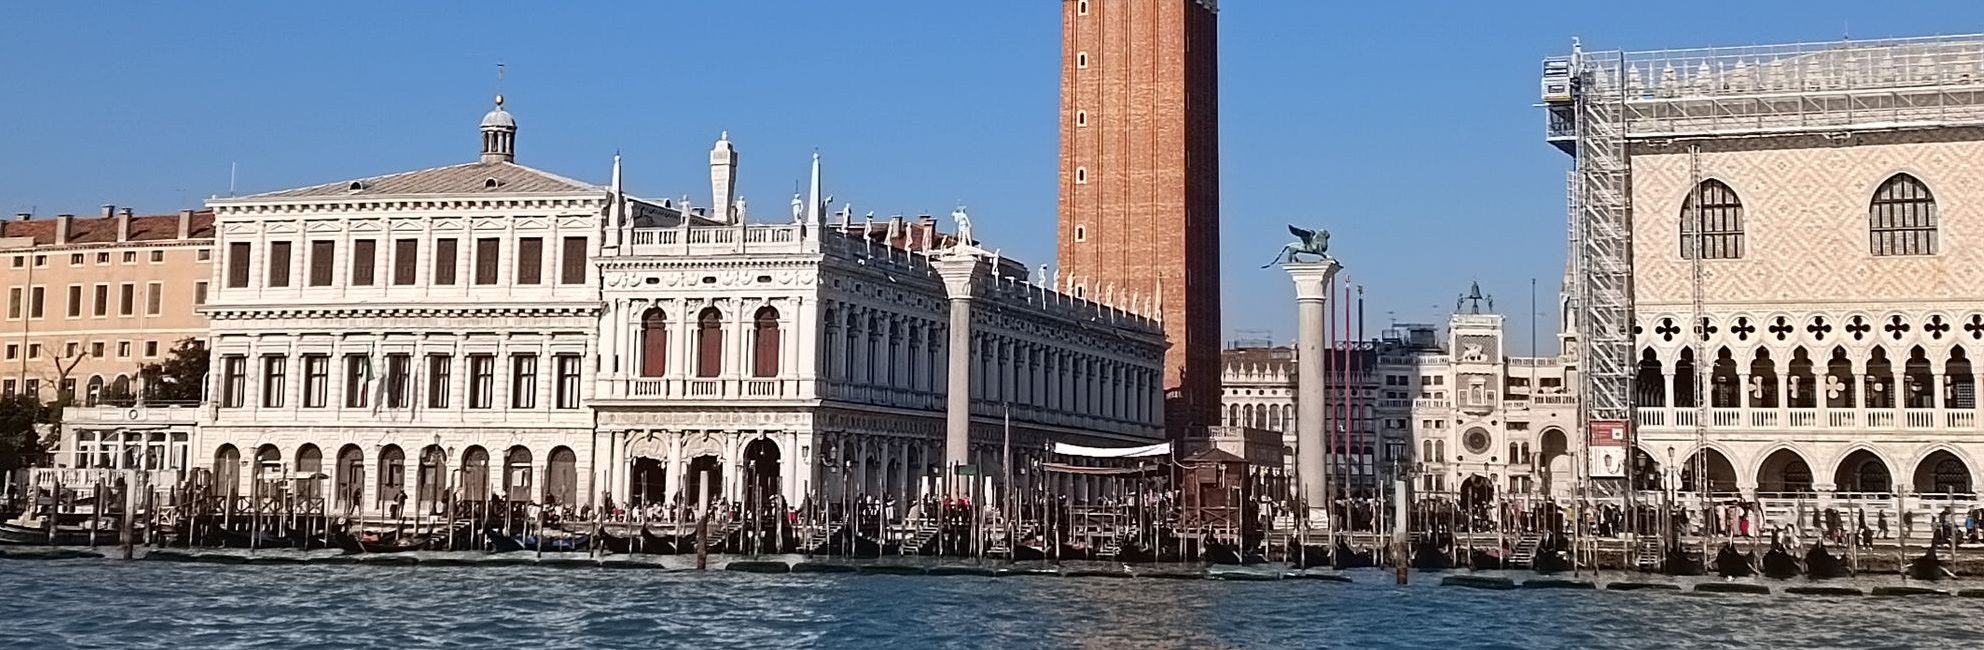 WŁOCHY Wenecja – pałace, muzea, kościoły i inne zabytki